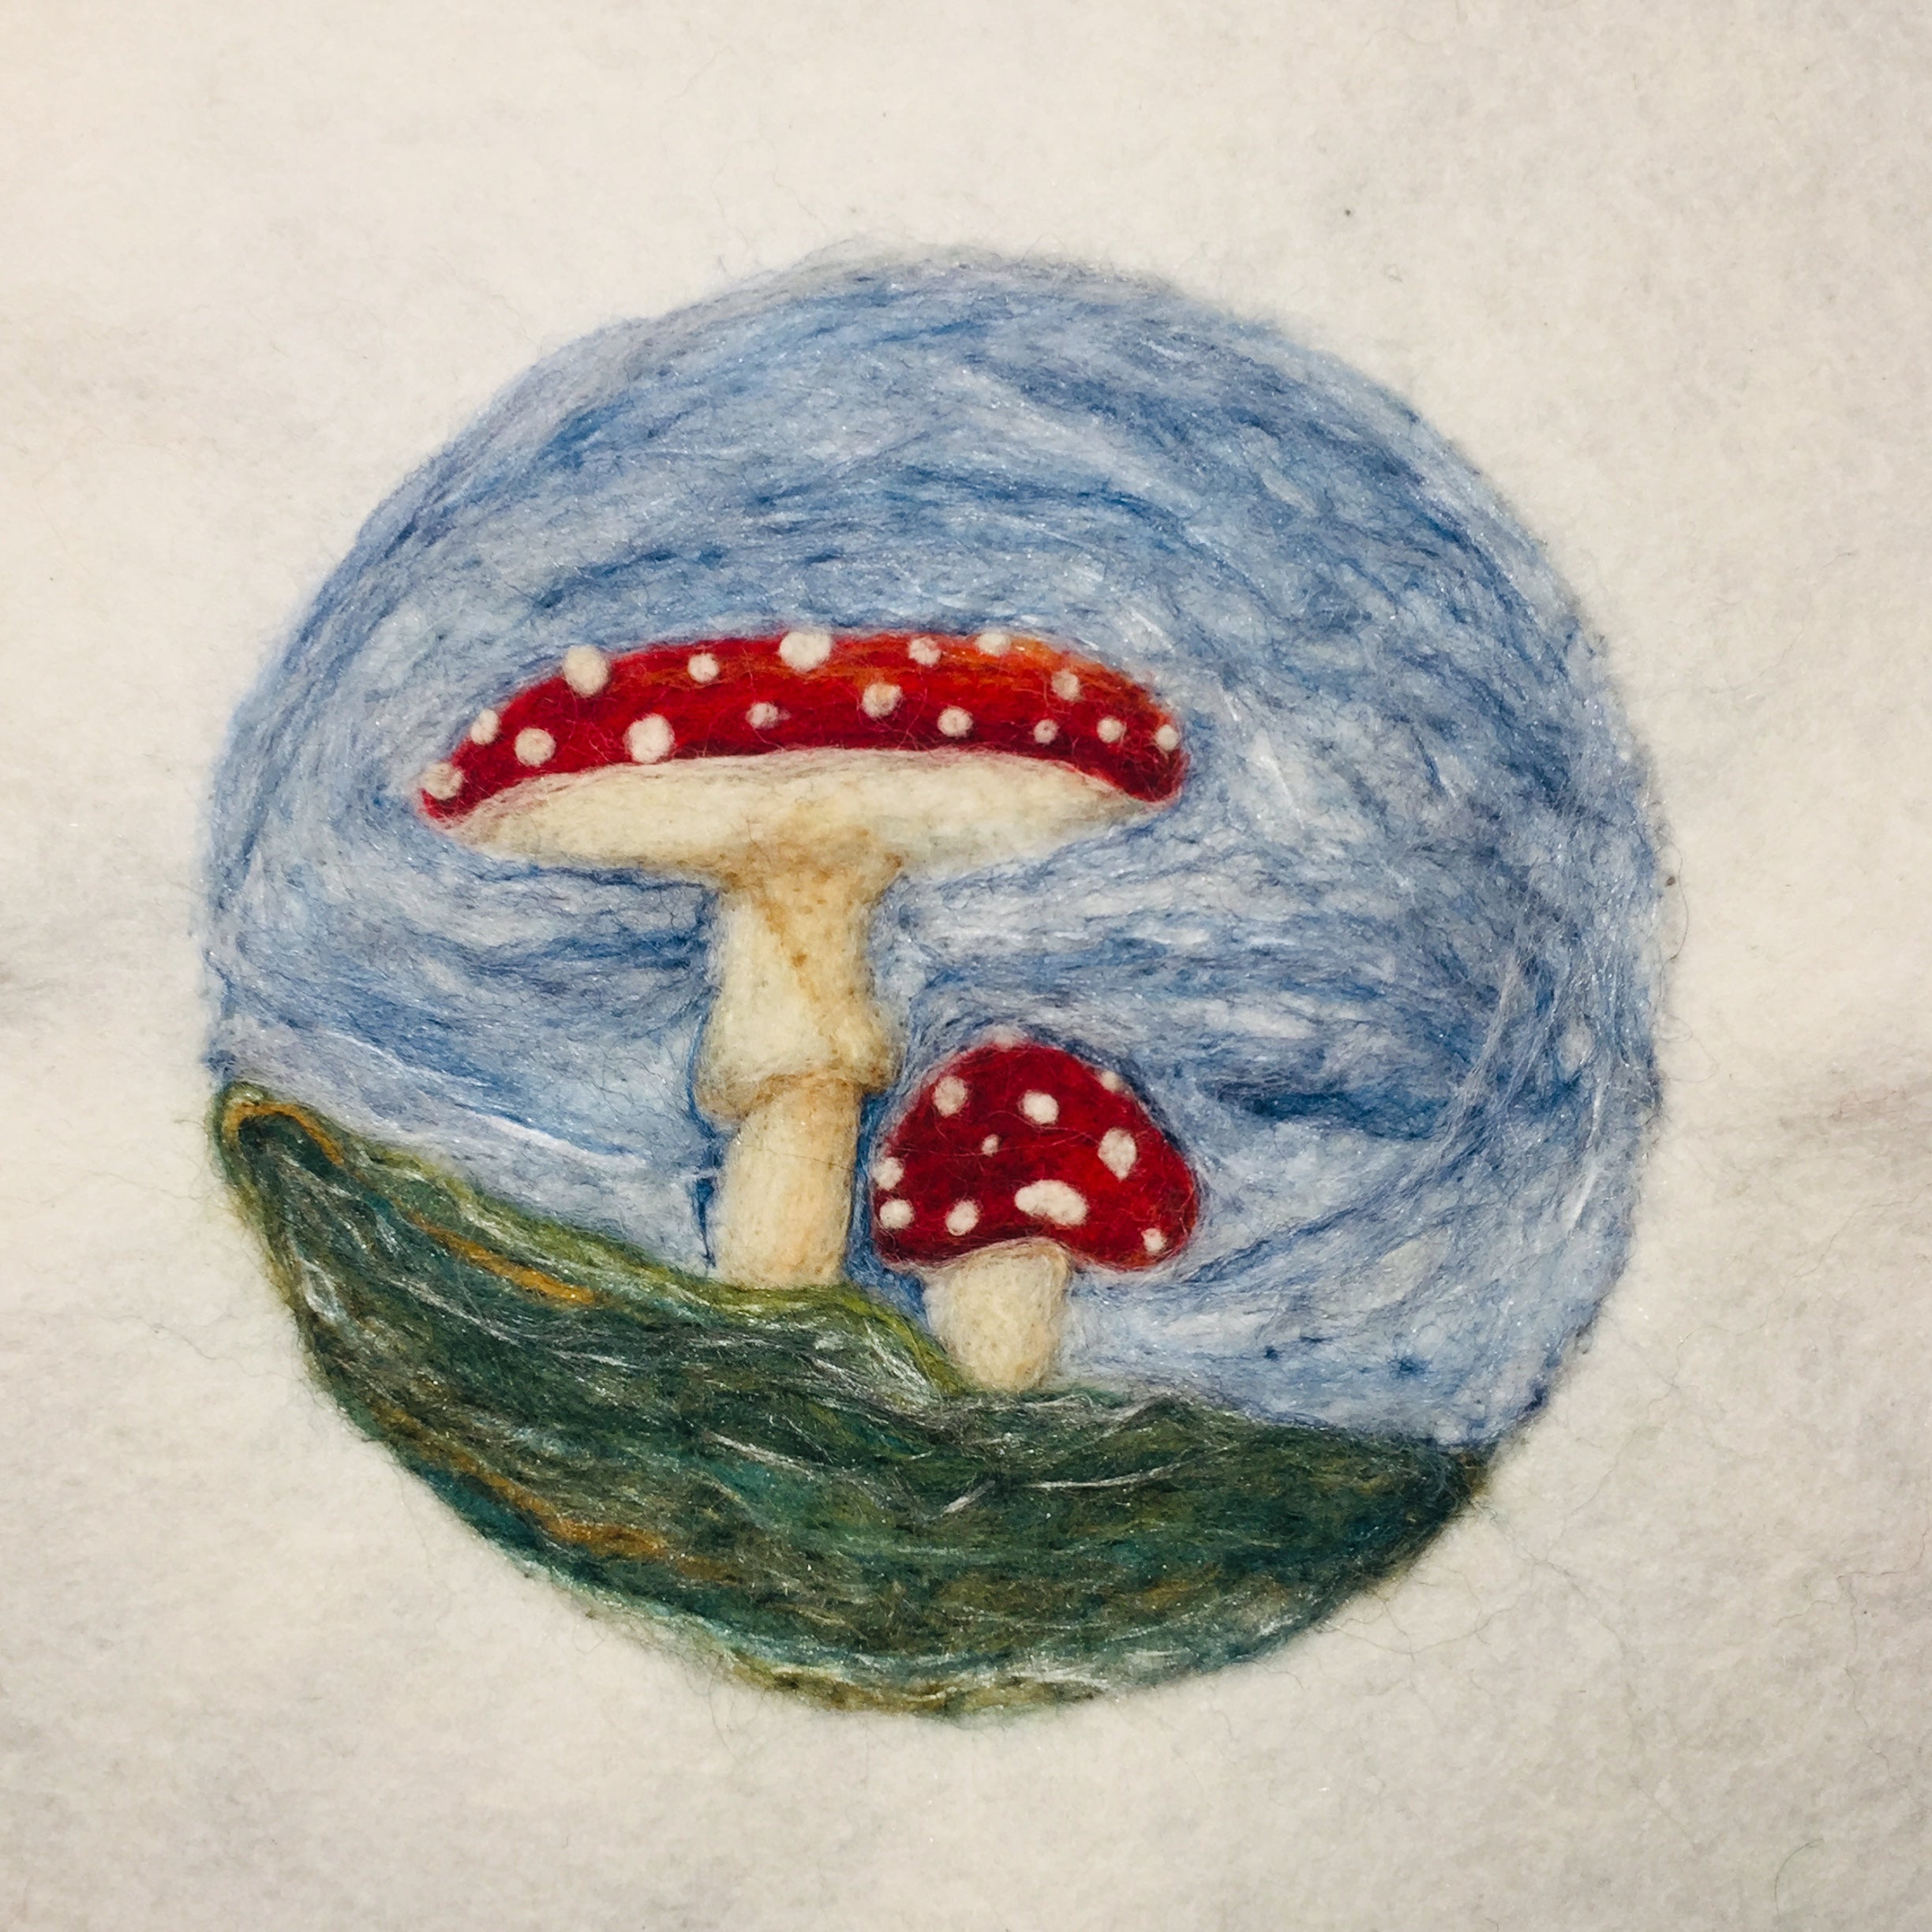 Mushroom Wool Painting Workshop & Kit